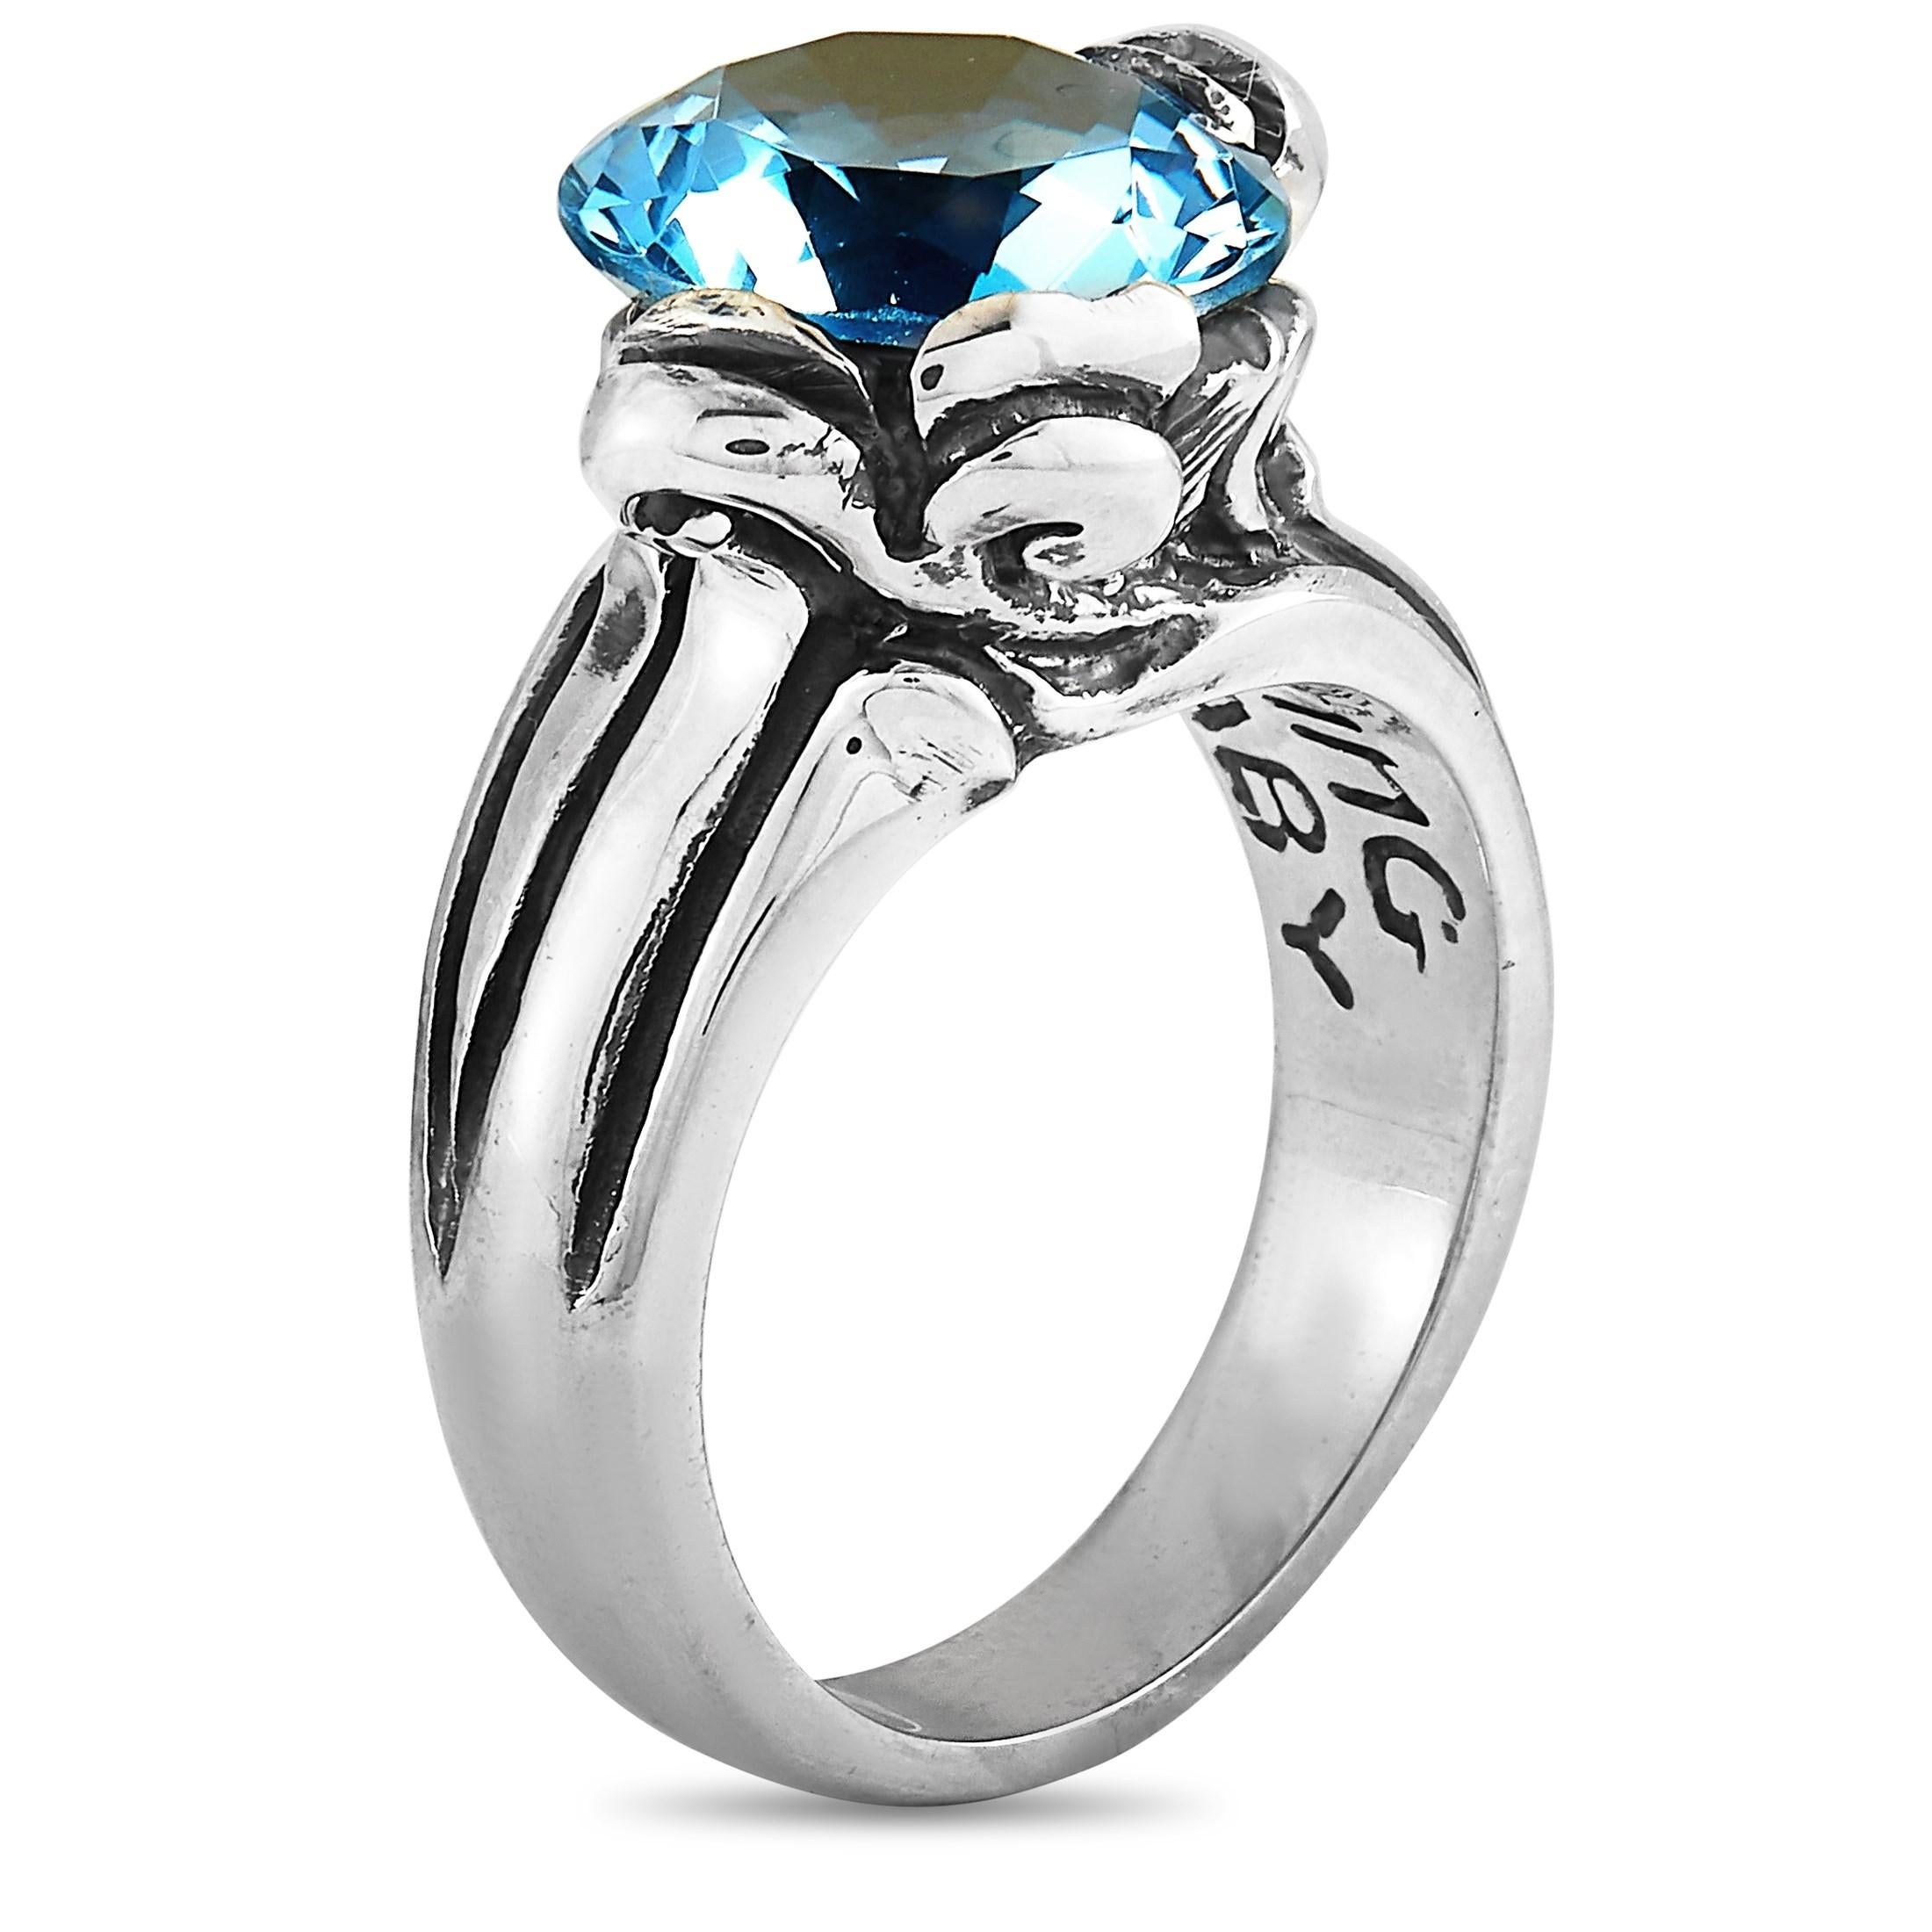 Dieser King Baby Ring ist aus Silber gefertigt und mit einem 13 mm großen blauen Topas besetzt. Der Ring wiegt 16,8 Gramm, hat eine Bandstärke von 4 mm und eine Höhe von 10 mm, während die Oberseite 19 x 16 mm misst.

Dieses Schmuckstück wird in